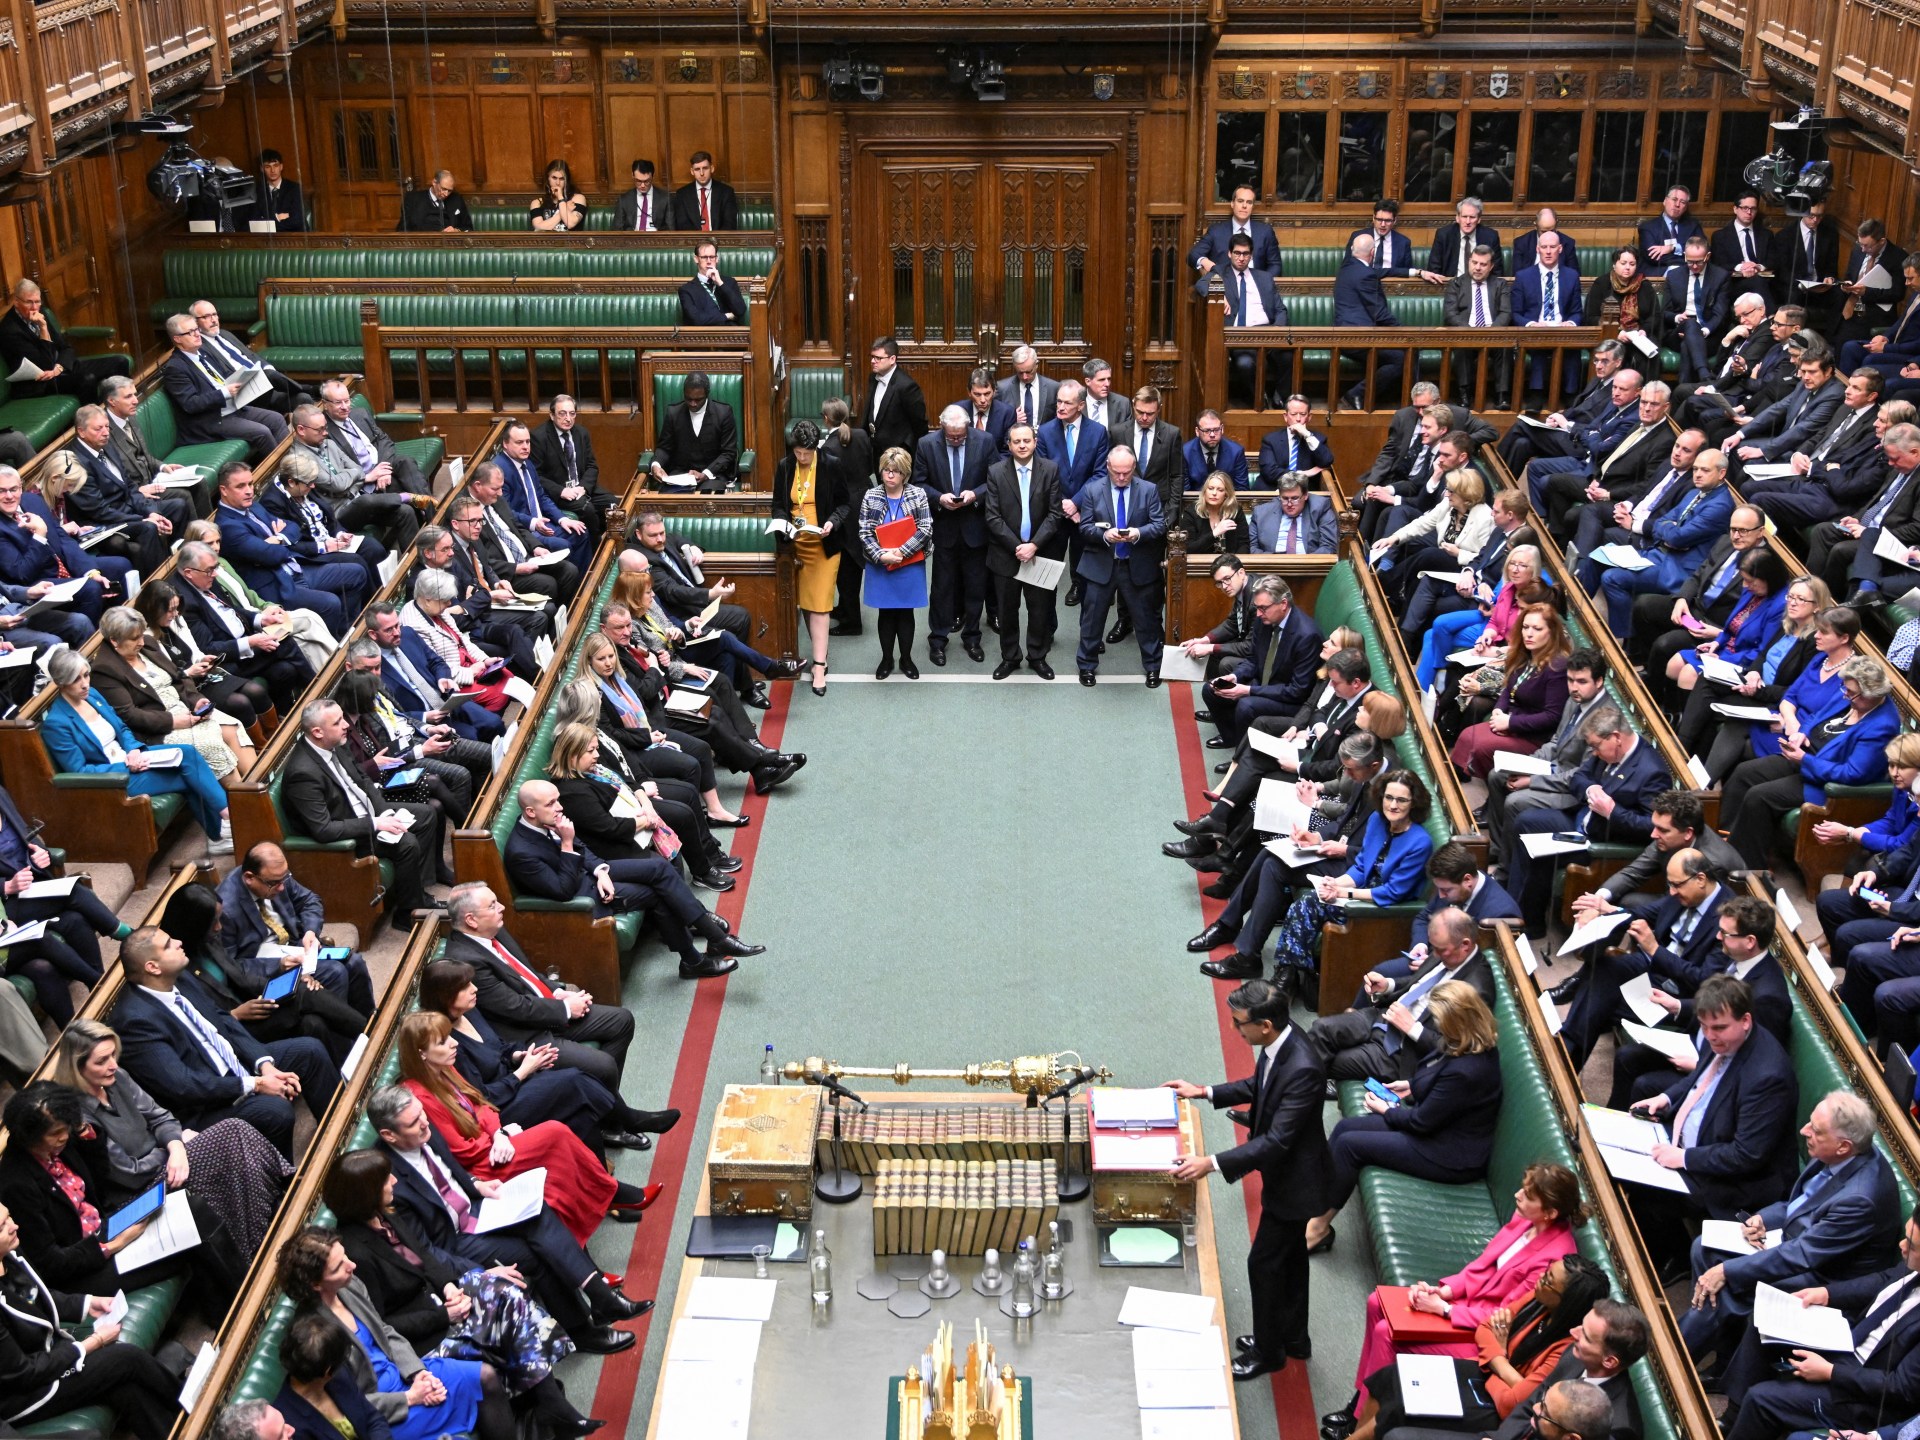 رئيس البرلمان في بريطانيا يؤجل تصويت حزب العمل في غزة على وقف إطلاق النار | حرب إسرائيل في غزة الاخبار